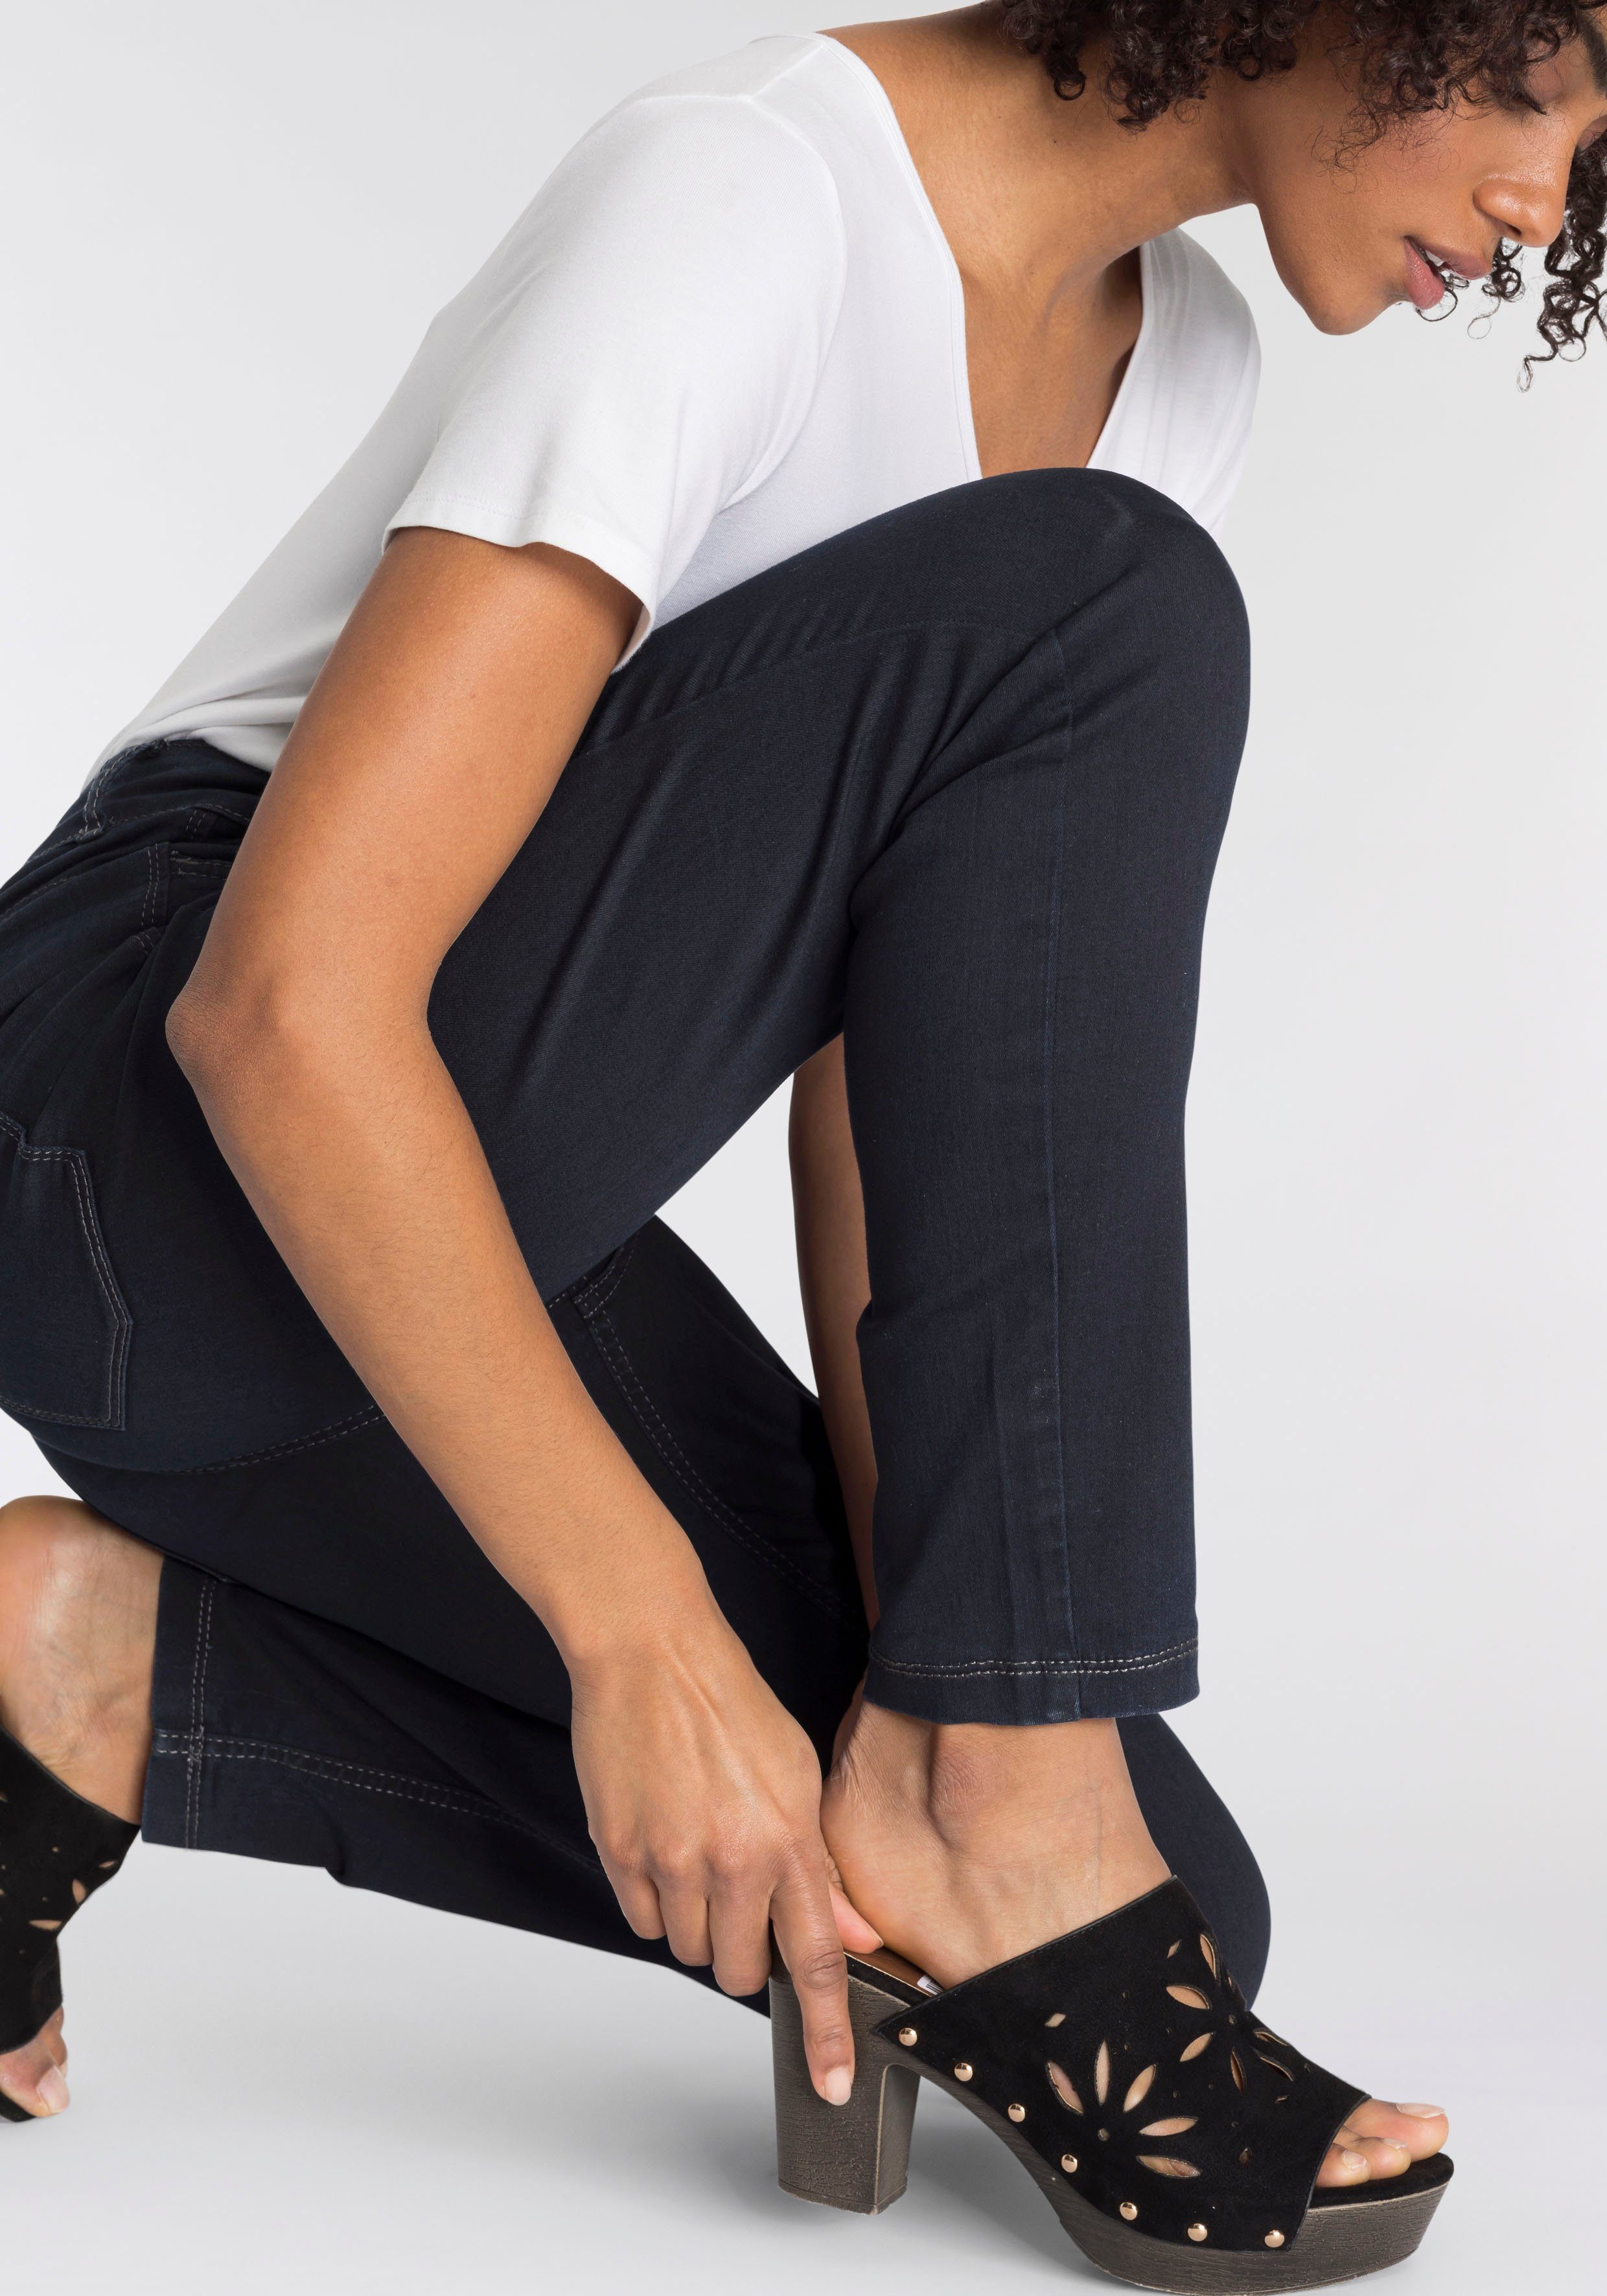 ganzen bequem sitzt Tag MAC den Skinny-fit-Jeans Power-Stretch dark rinsed blue Hiperstretch-Skinny Qualität